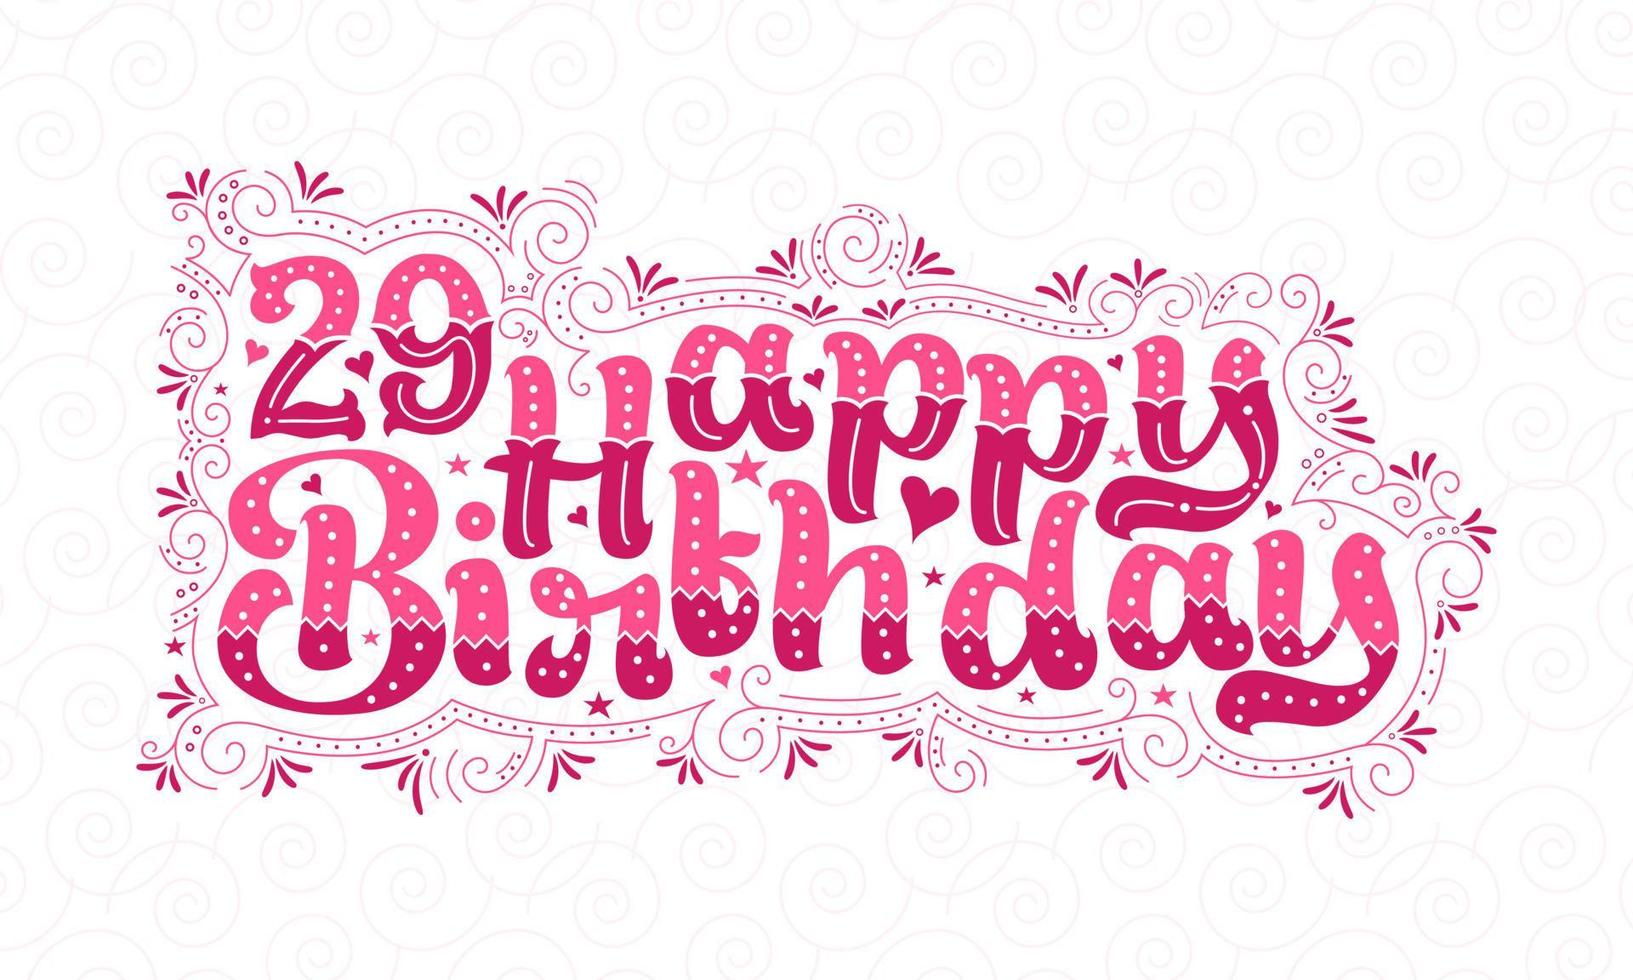 Letras de feliz cumpleaños 29, hermoso diseño tipográfico de cumpleaños de 29 años con puntos rosas, líneas y hojas. vector